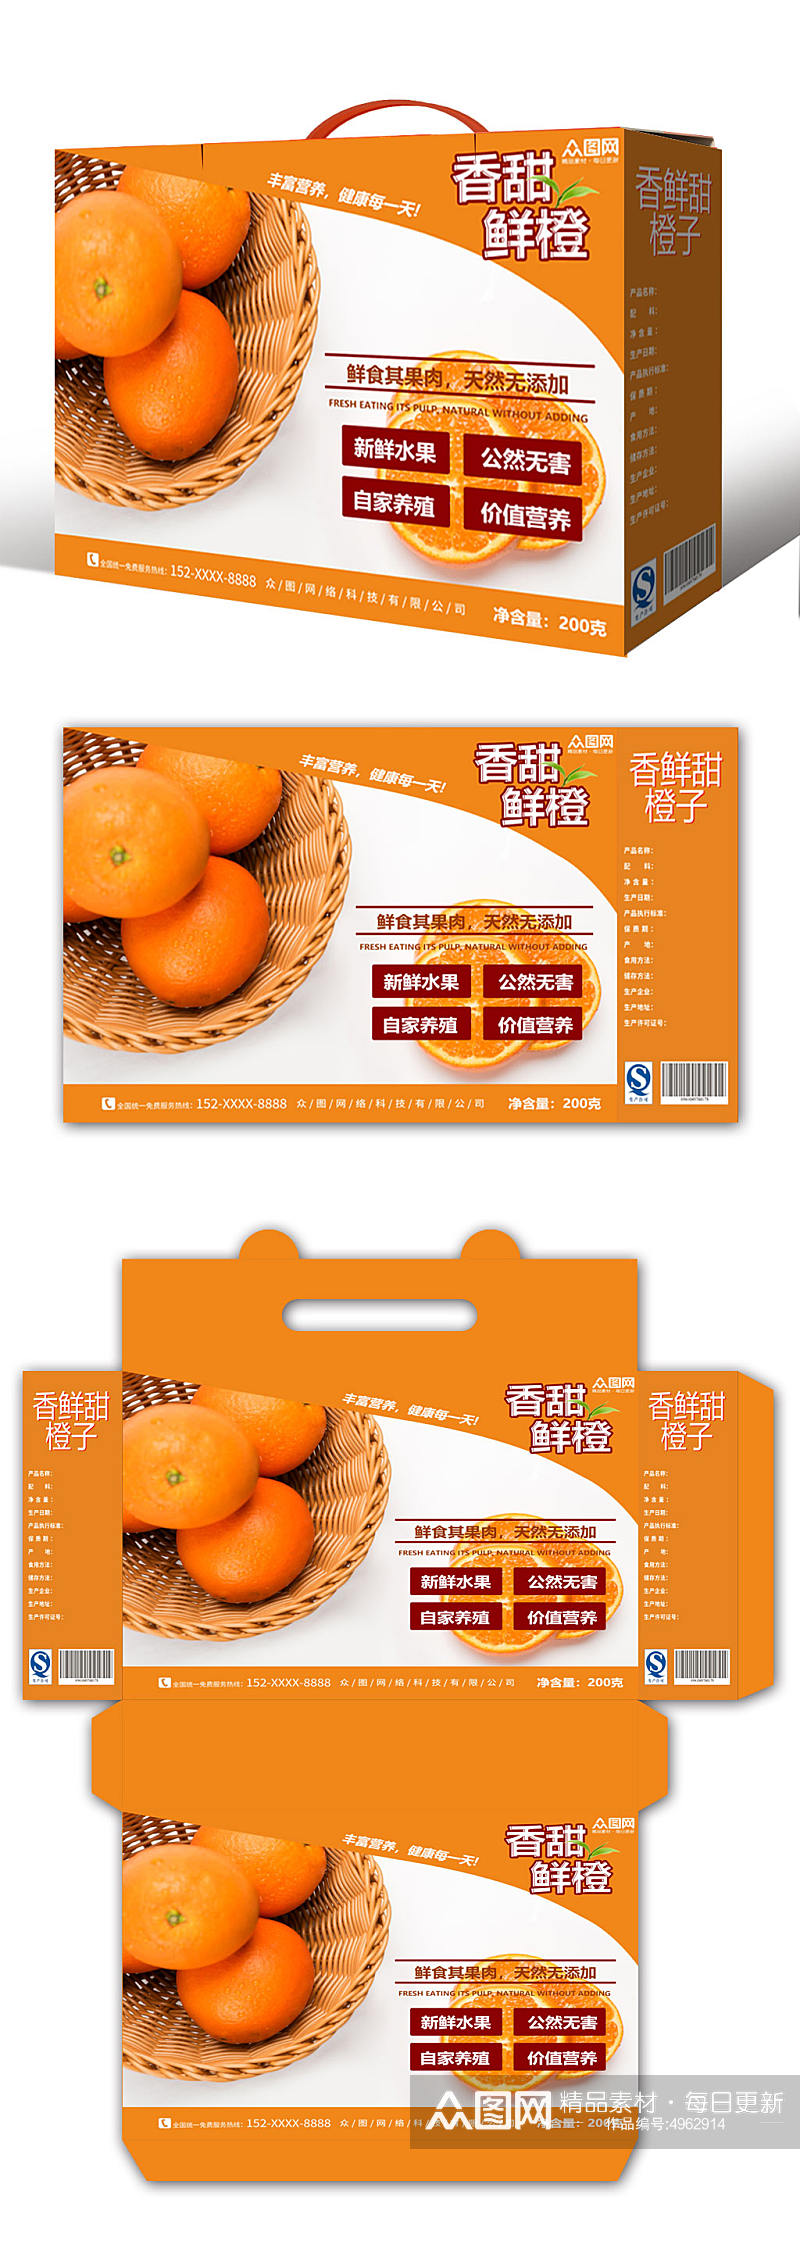 简约大气鲜橙橙子礼盒包装设计素材